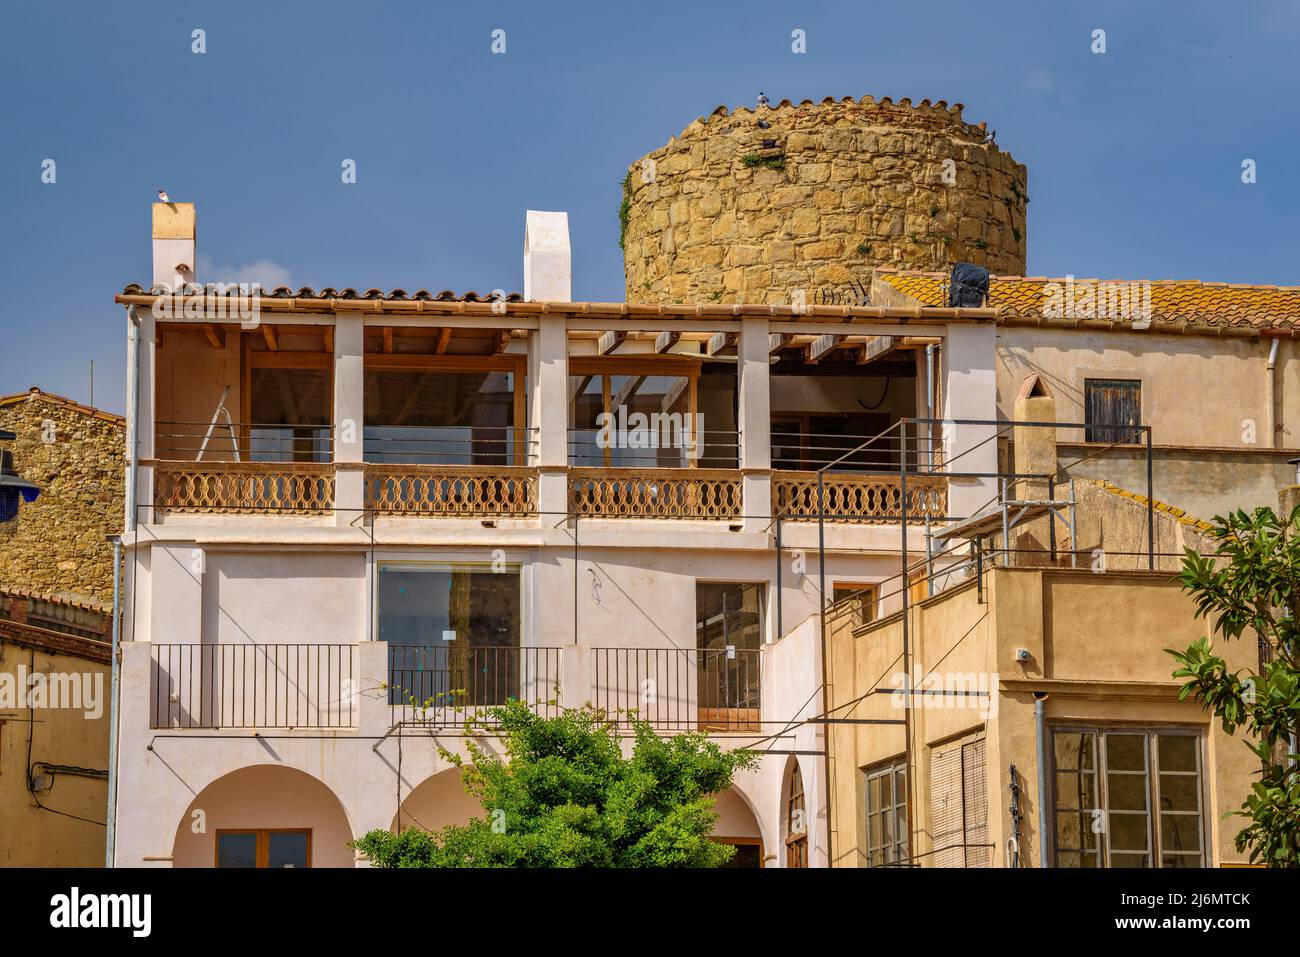 Torre circolare del recinto medievale fortificato di Verges (Baix Empordà, Girona, Catalogna, Spagna) ESP: Torre Circular de Verges (Gerona, España) Foto Stock